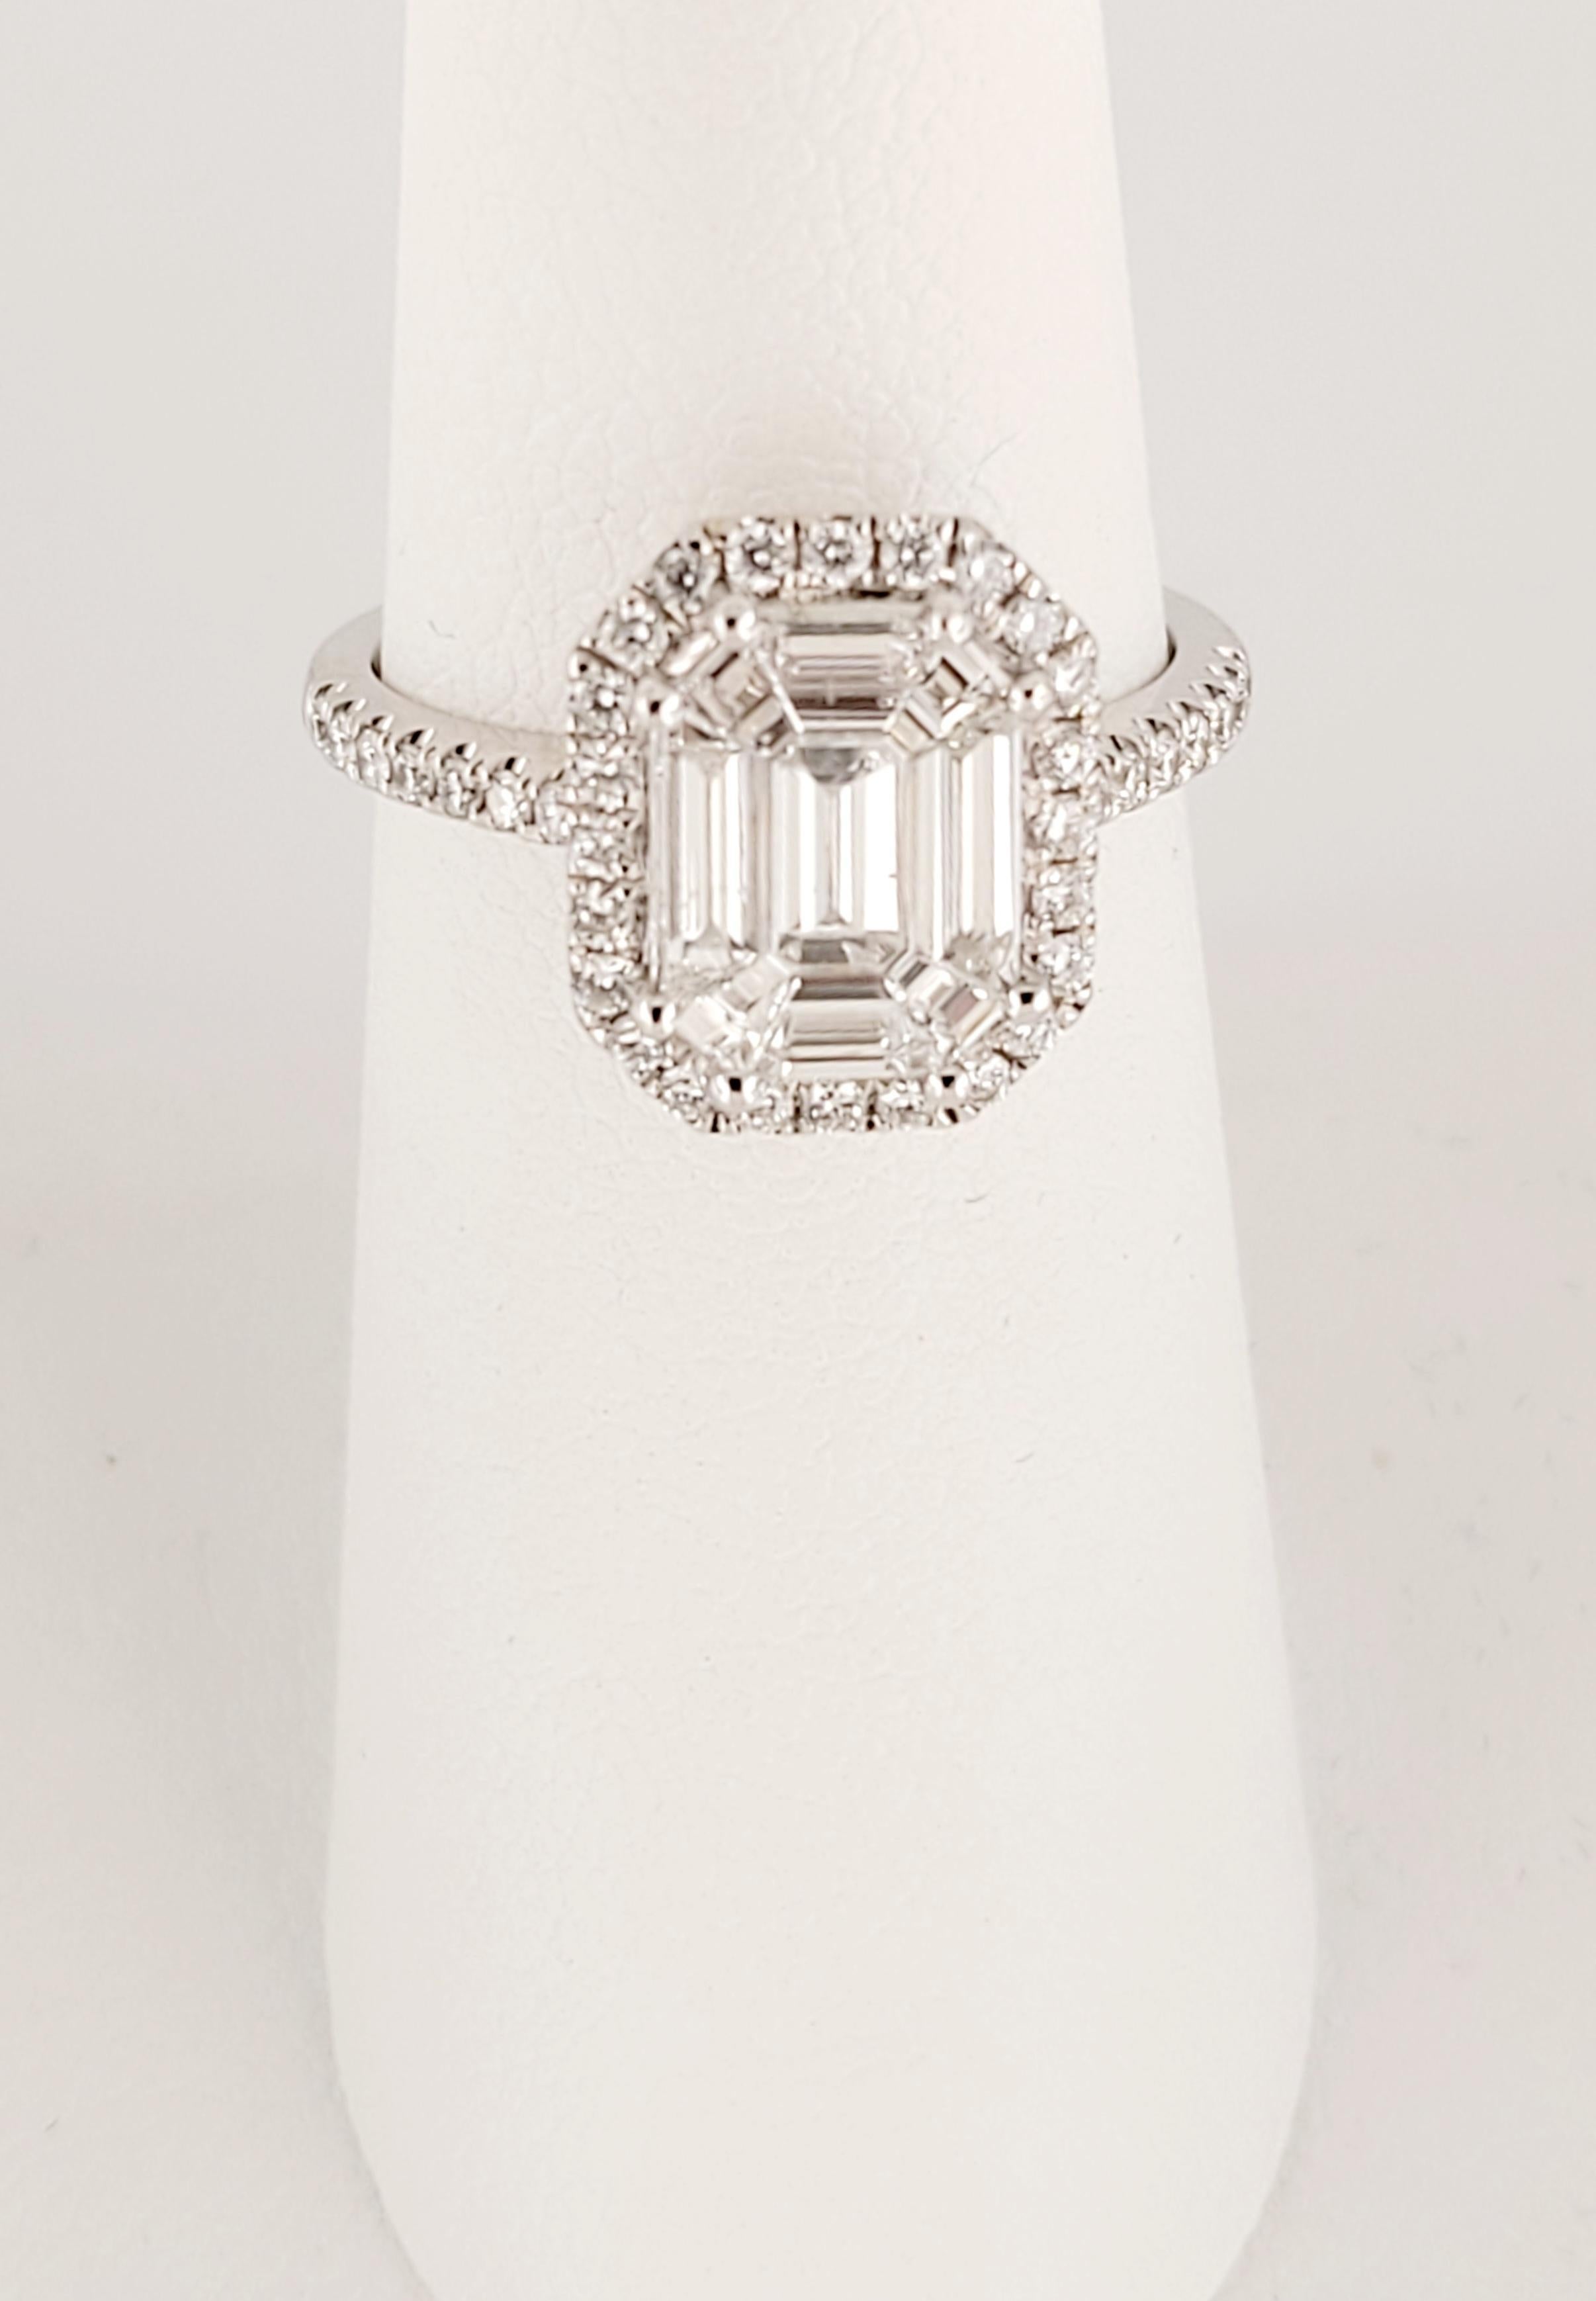 Diamant Pie Cut Center Stone, composé de 9 pierres. Diamant naturel de couleur E-F, pureté VVS. Pierres latérales d'environ 0,60 carat au total, de même couleur et de même pureté. Serti en or blanc 18K. Taille 6. Prix de vente au détail 4900 $.